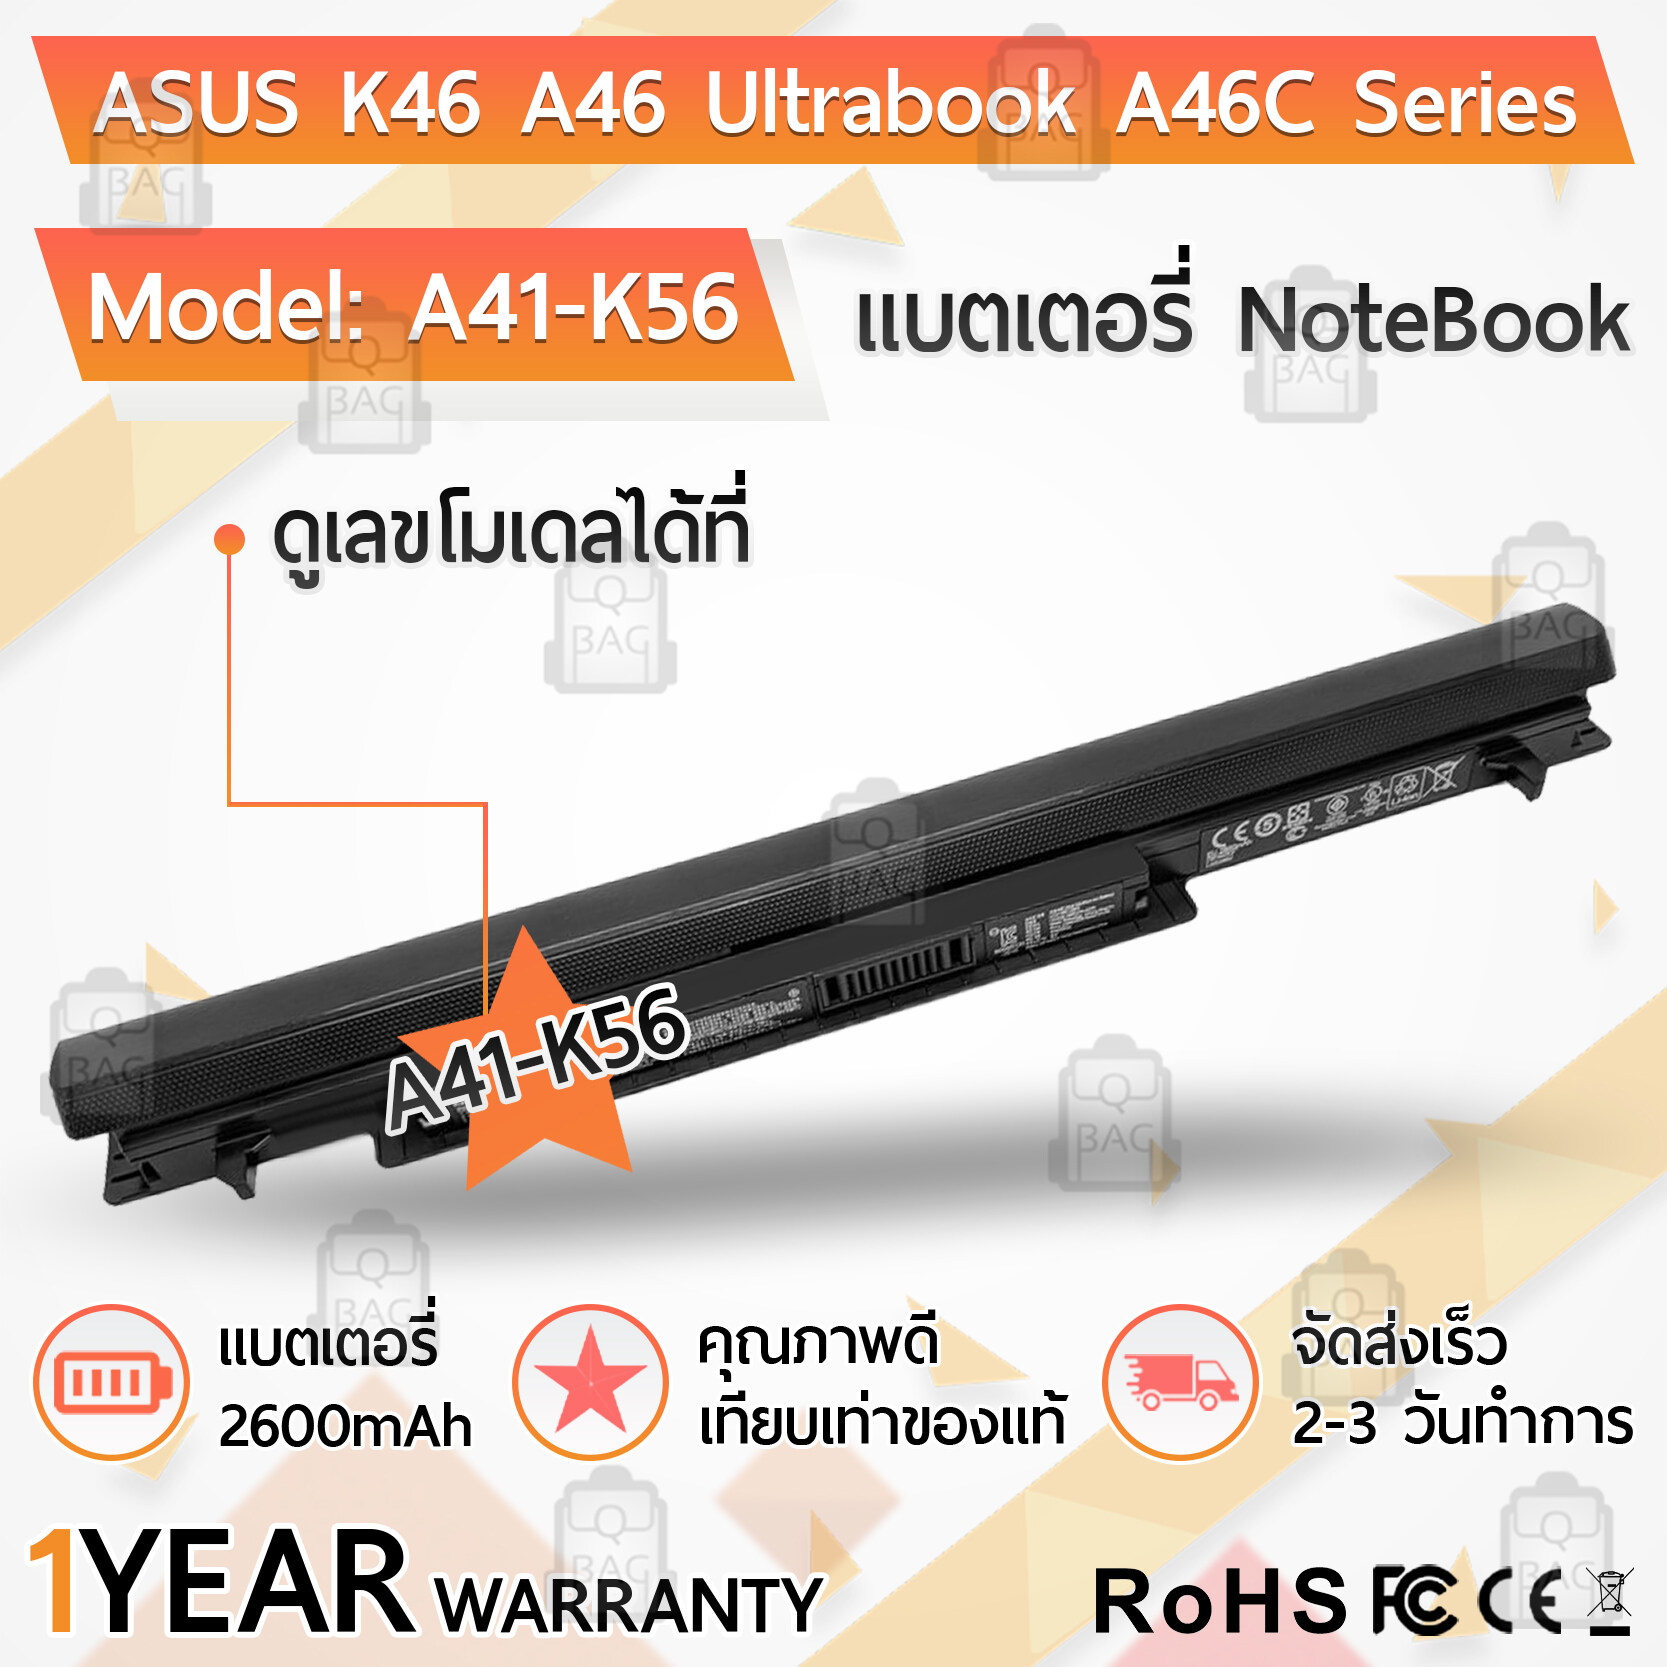 รับประกัน 1 ปี - แบตเตอรี่ โน้ตบุ๊ค แล็ปท็อป ASUS A46 A55 K46 K46C K56 S46 S56 S550 S405 X80 A31-K56 A41-K56 A42-K56 A46 A56 E46 K56 R405 R505 R550 S40 S46 S505 S56 Battery Notebook Laptop 2600mAh